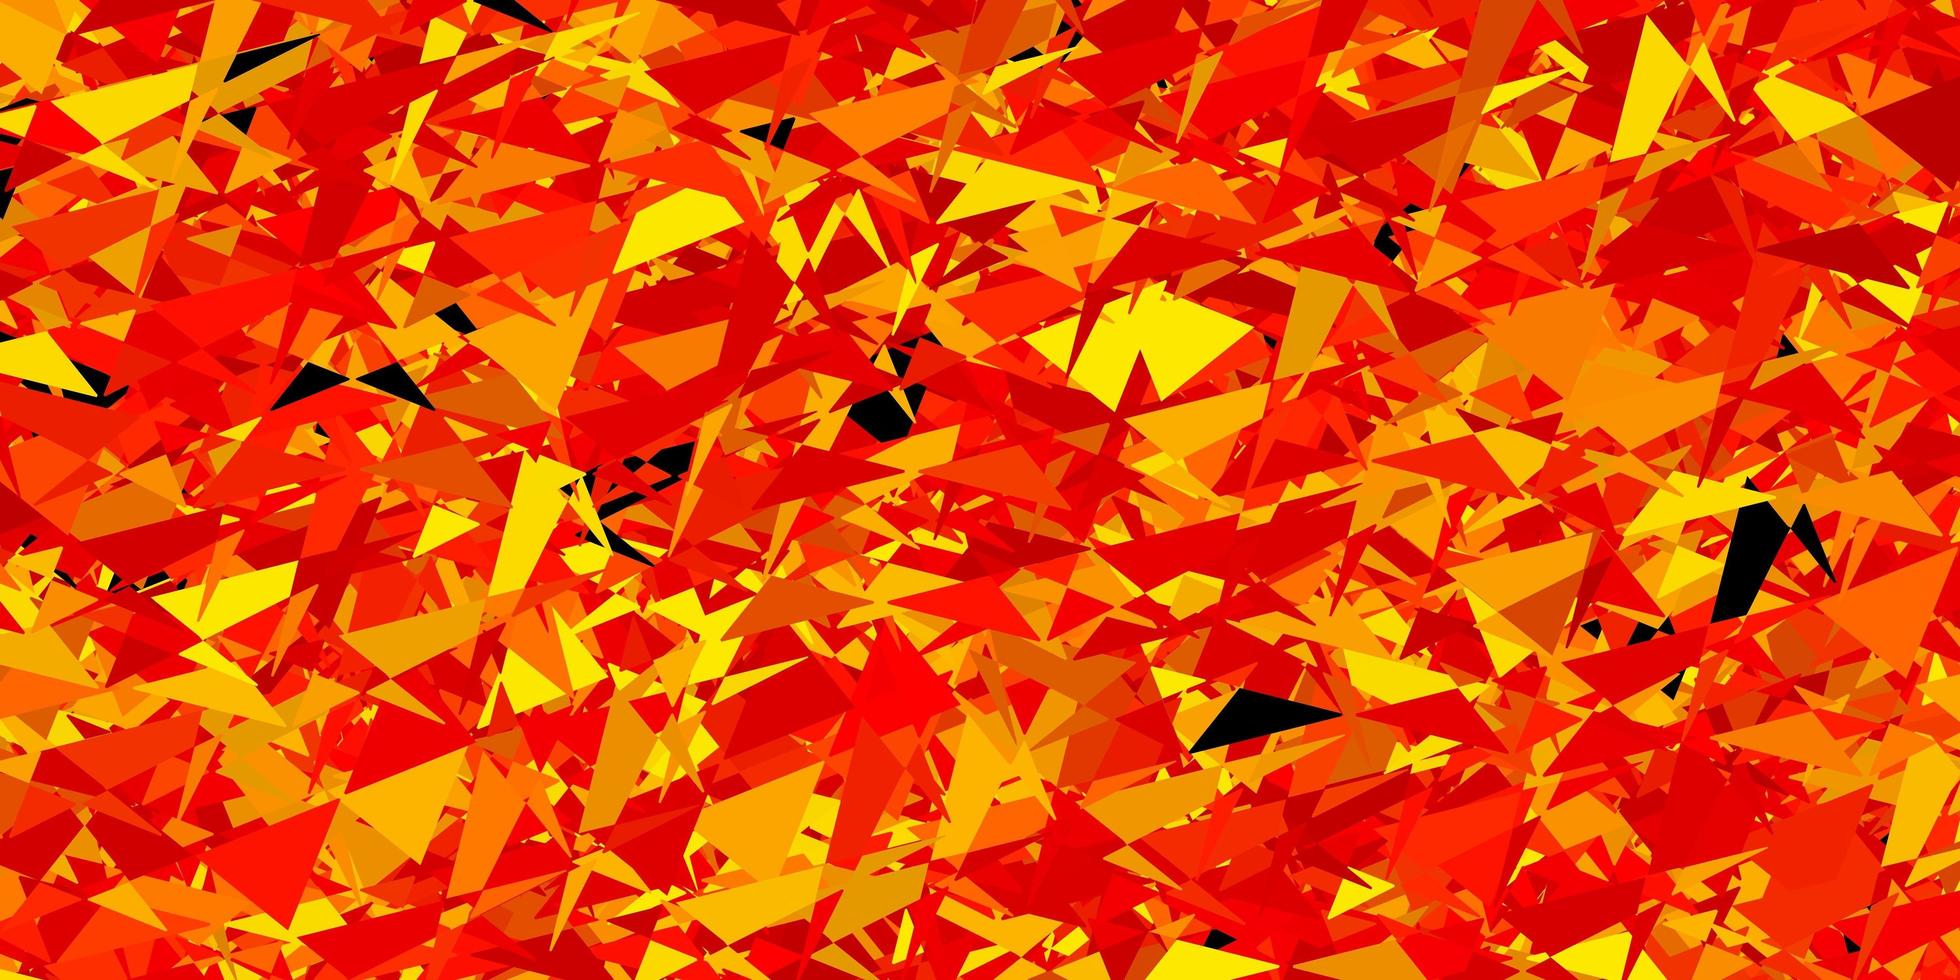 fond de vecteur orange clair avec des triangles